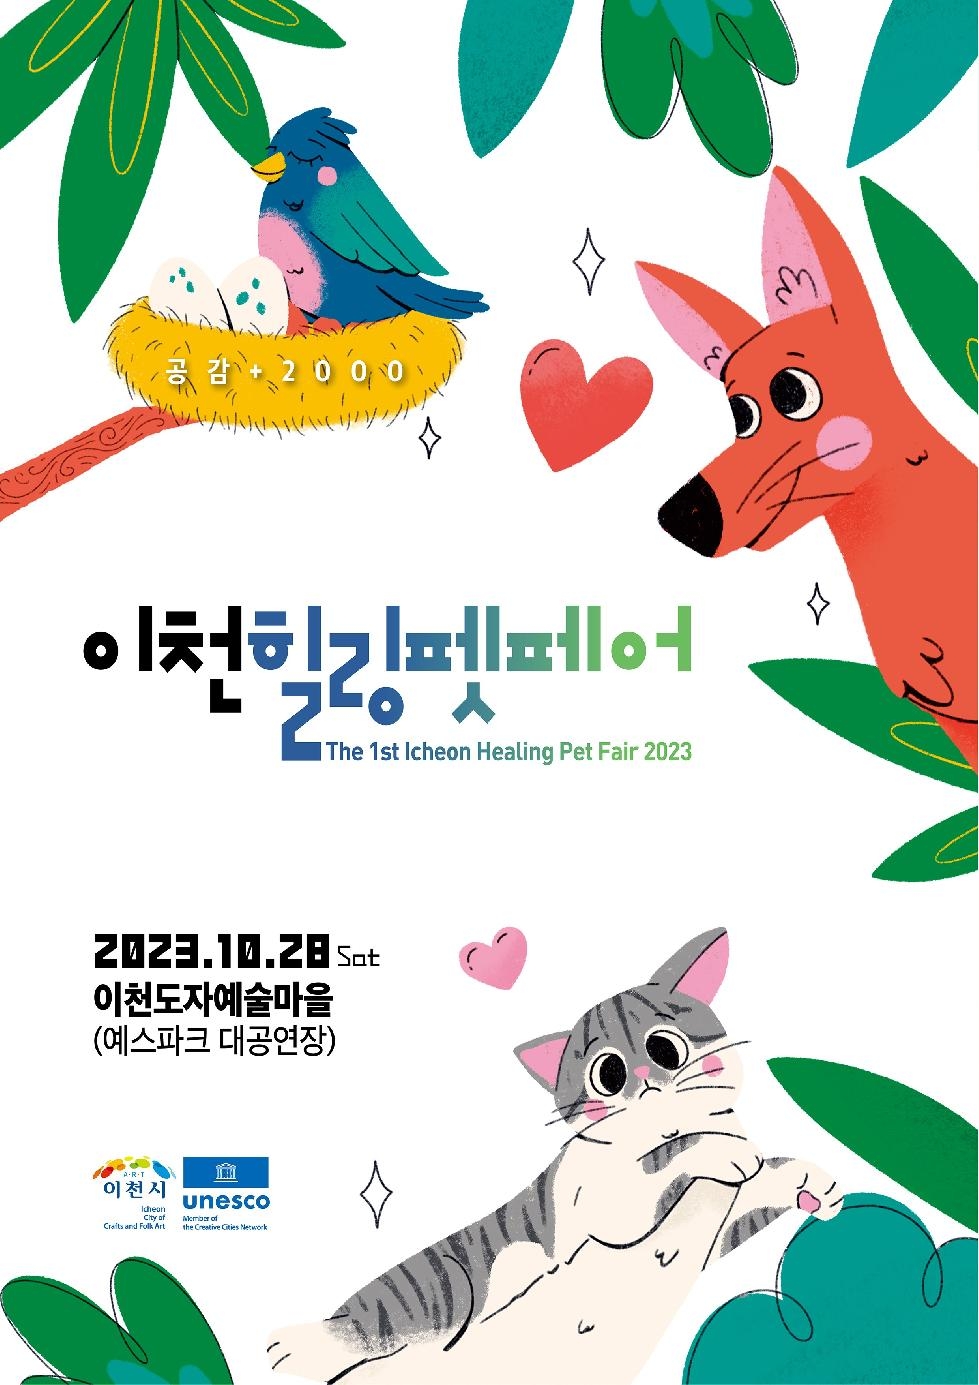 공감+2000, 제1회 이천힐링펫페어 개최